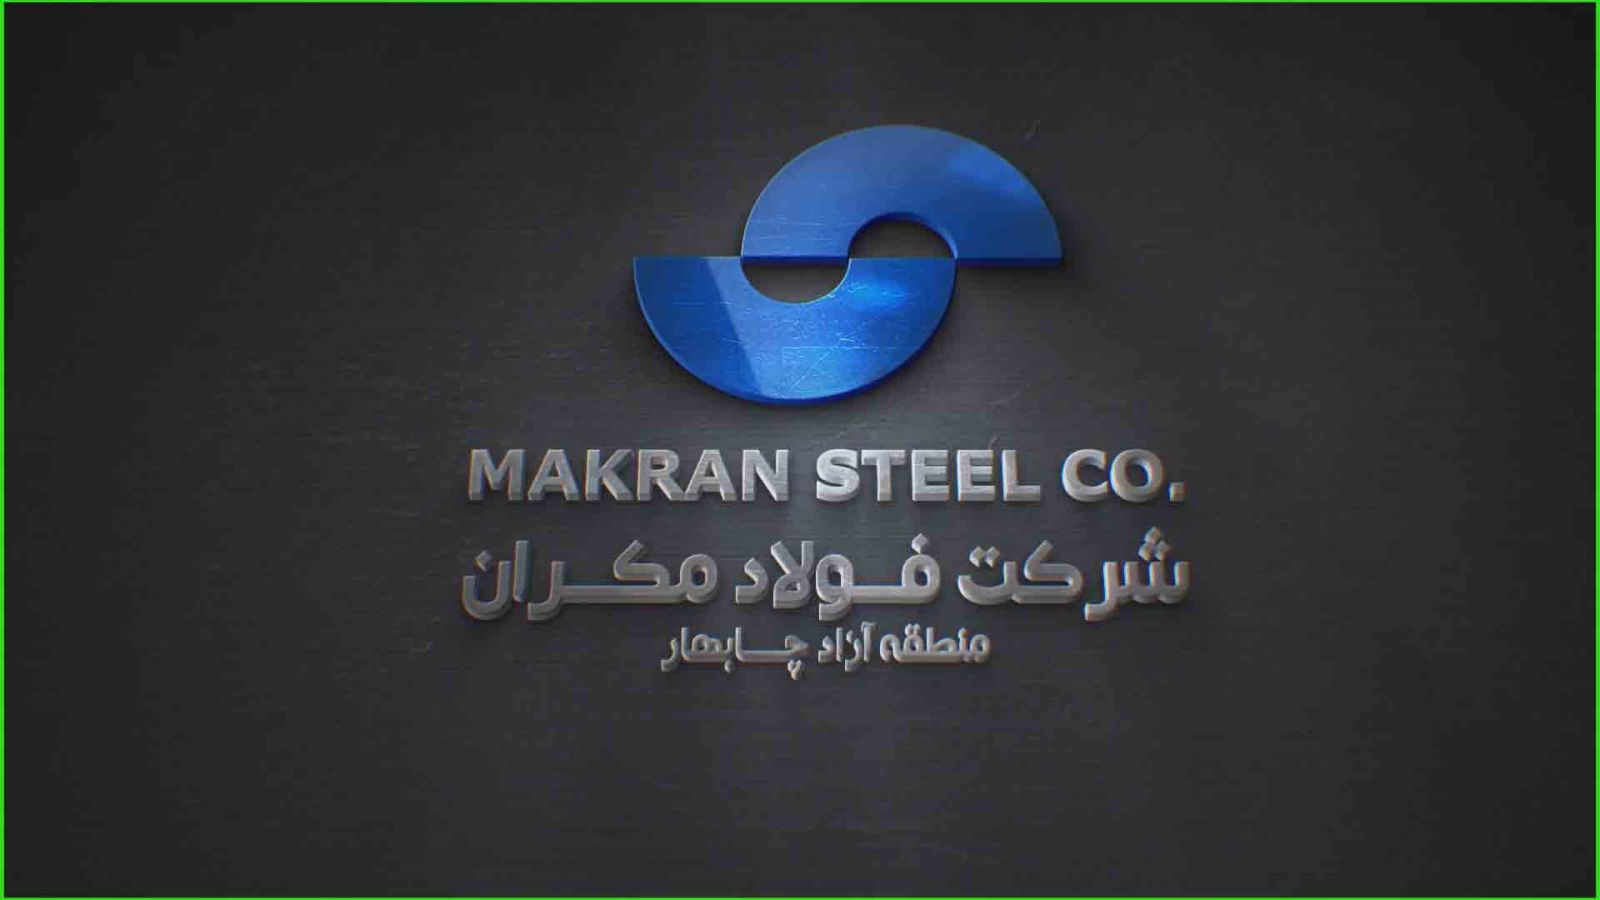 واگذاری ۲۰ درصد از سهام شرکت فولاد مکران به تعاونی مرزنشینان سیستان و بلوچستان